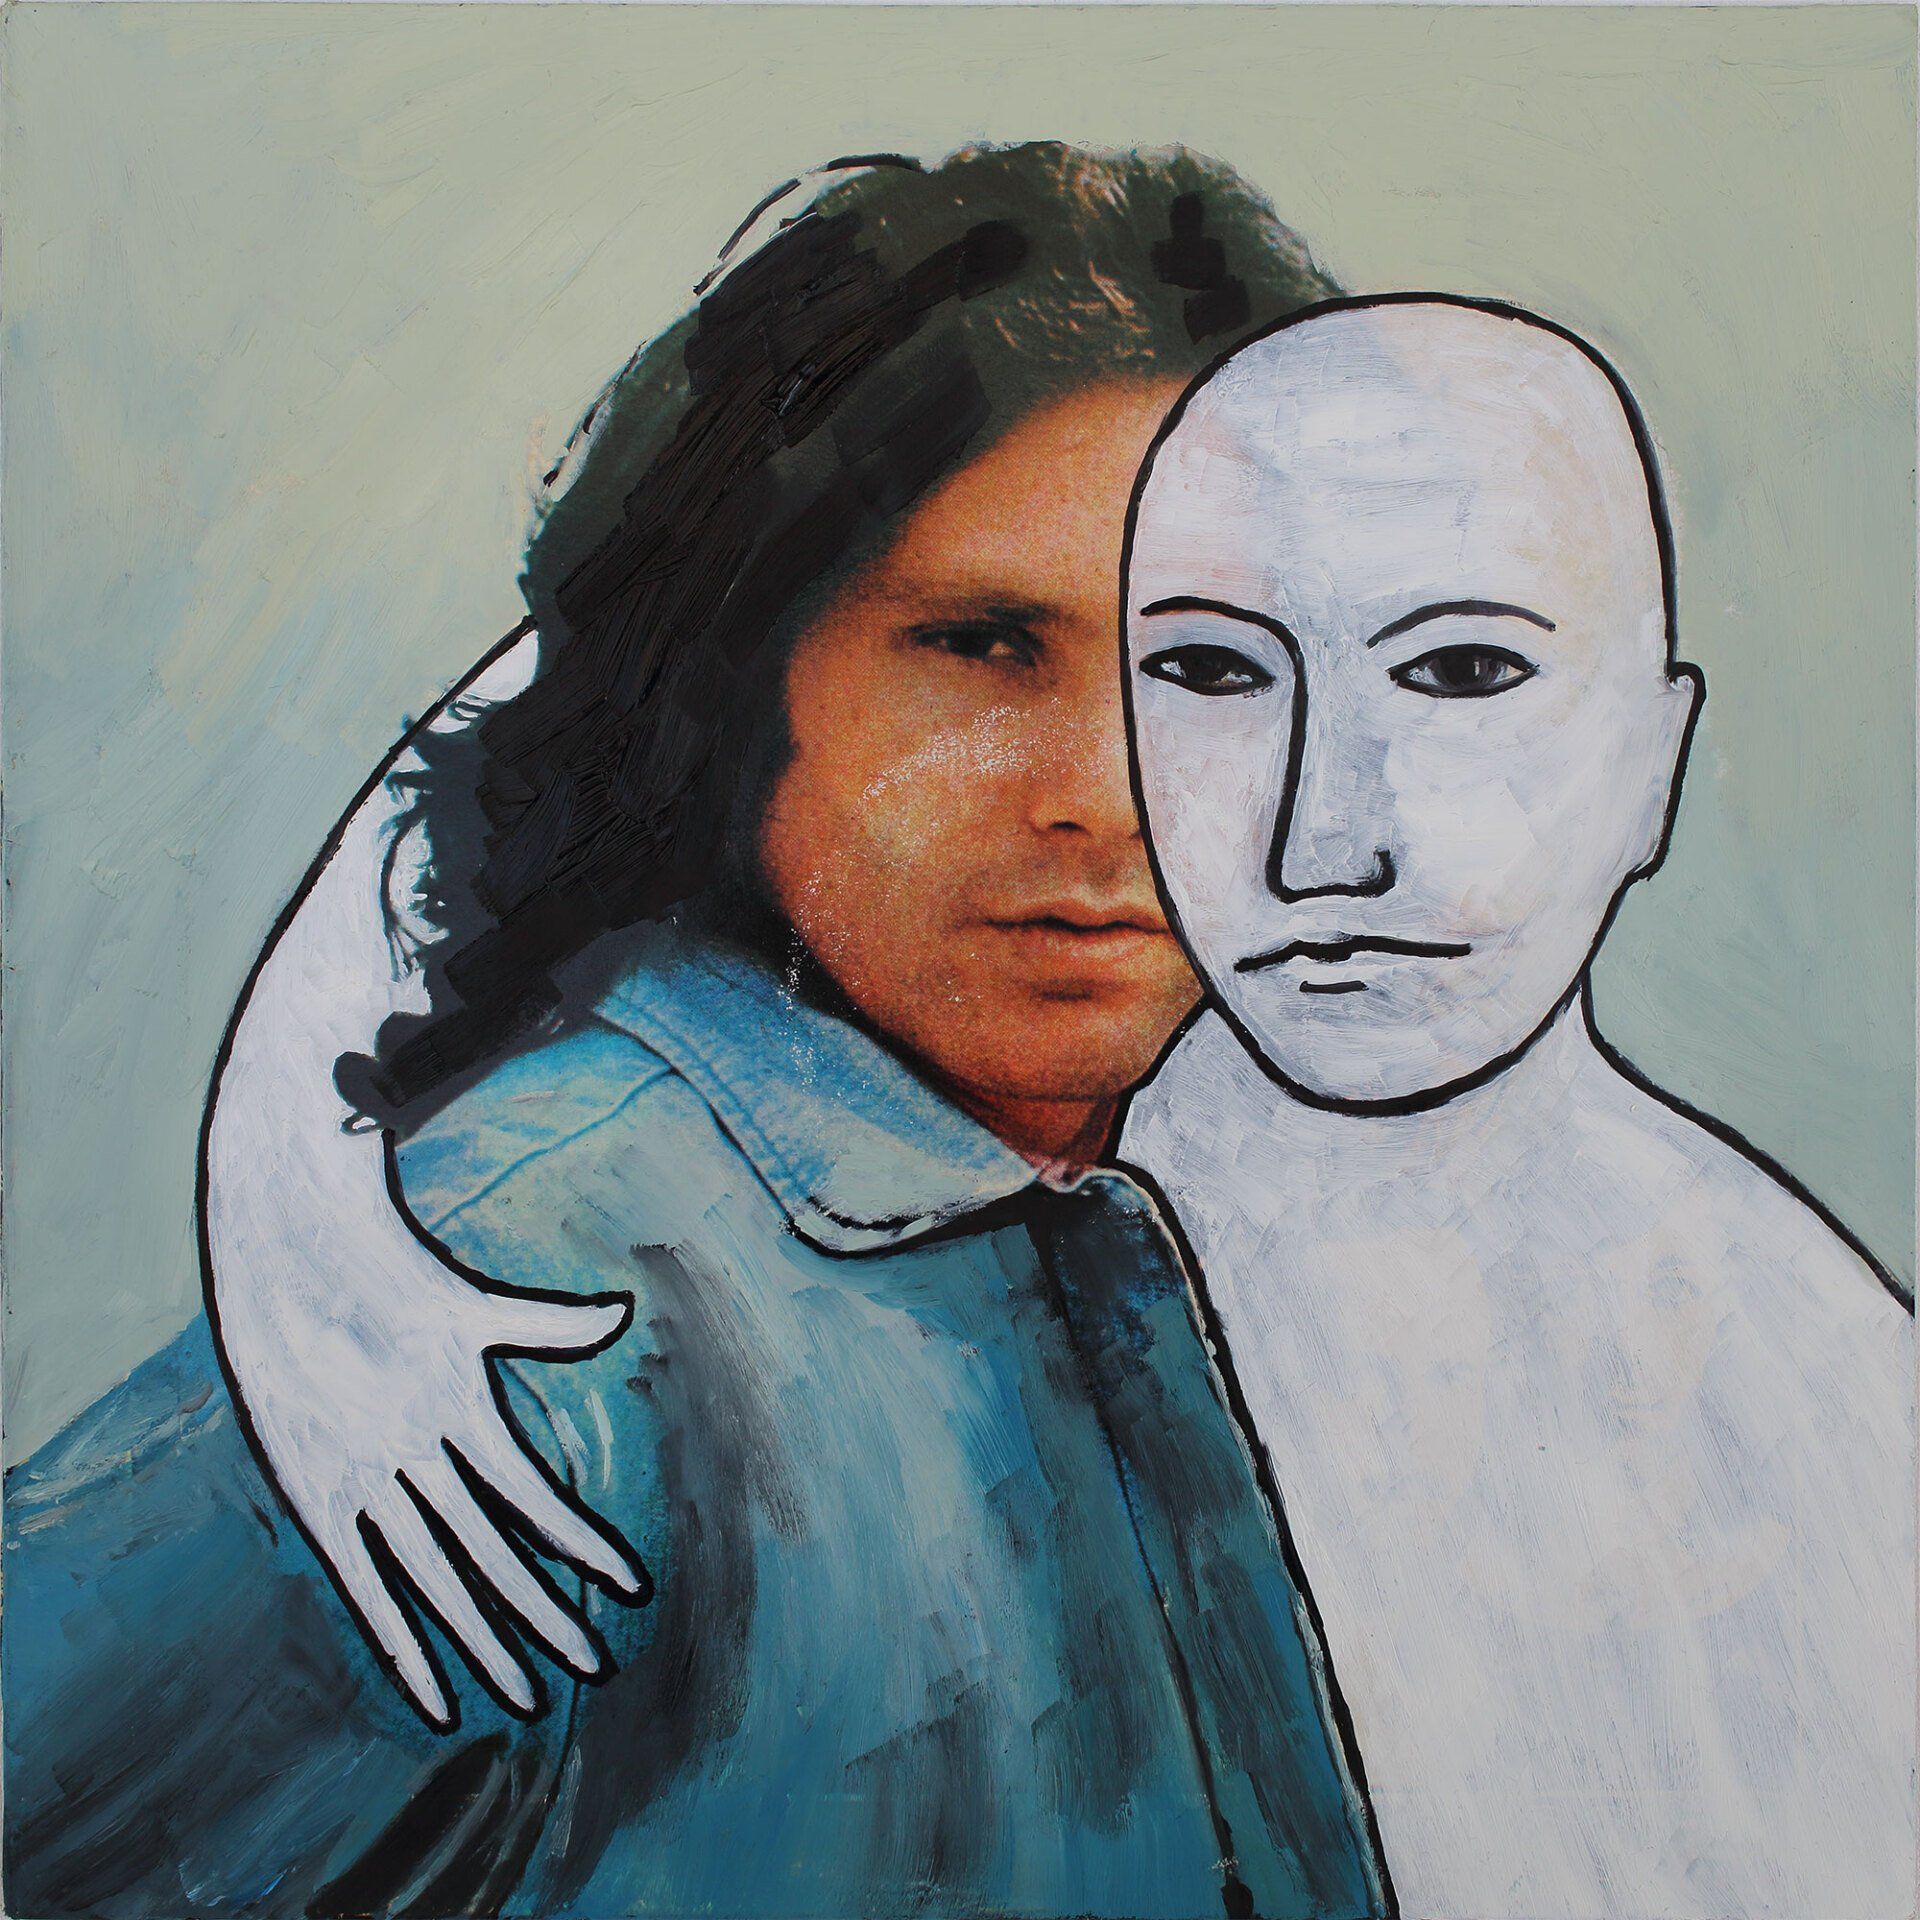 „Ghost Rider No. 18“ (Jim Morrison / The Doors) by Sebastian Bieniek (B1EN1EK), 2019. Oil on original LP cover, 31,5 cm. x 30 cm. Bieniek-Paint (overpainted medium) from the oeuvre of Bieniekface by the artist.